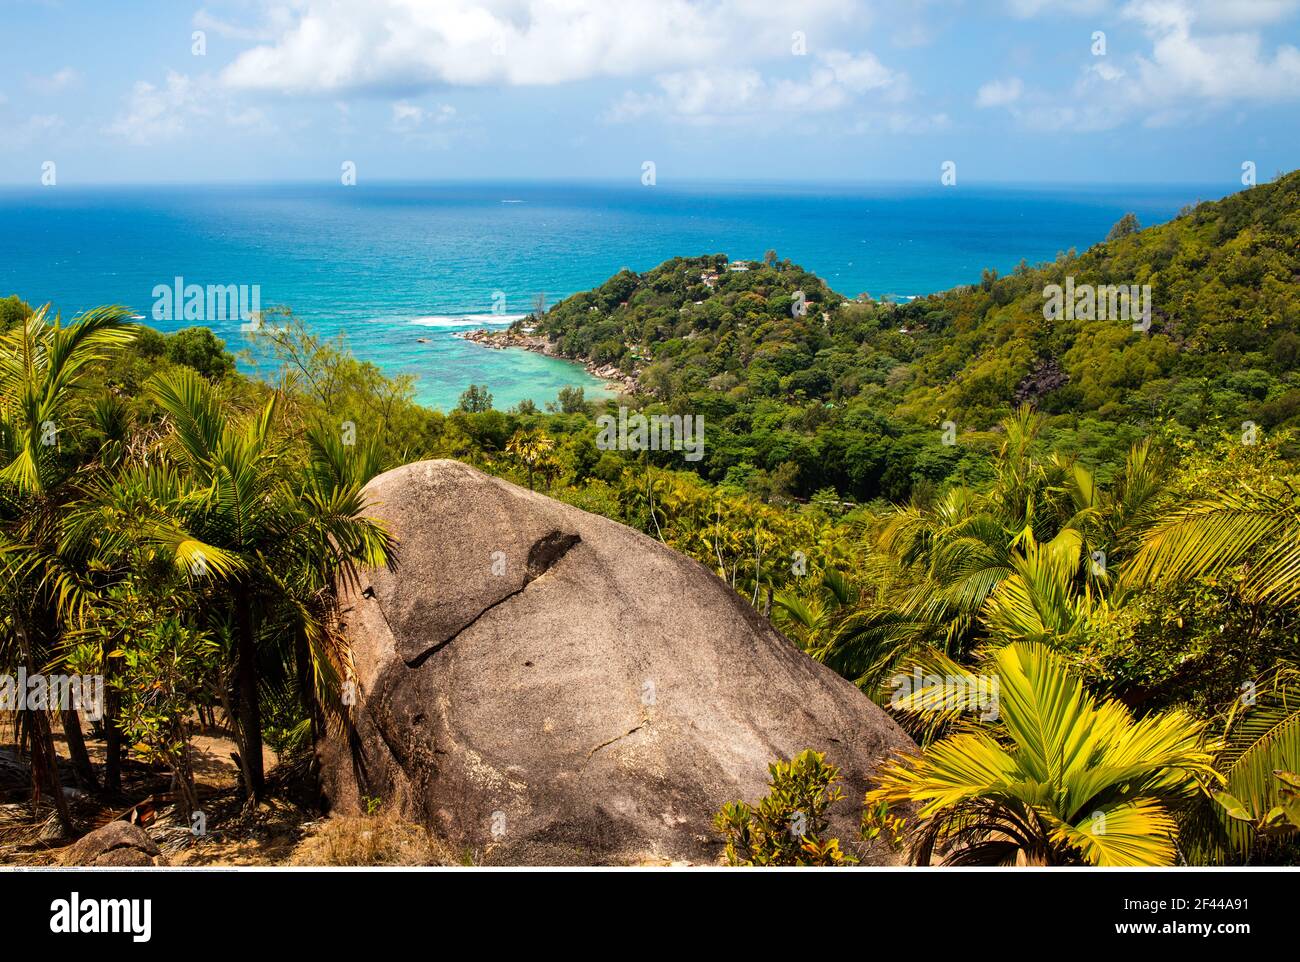 Géographie / Voyage, Seychelles, Praslin, vue panoramique du point de vue de la fond Ferdinand natur, Additional-Rights-Clearance-Info-not-available Banque D'Images